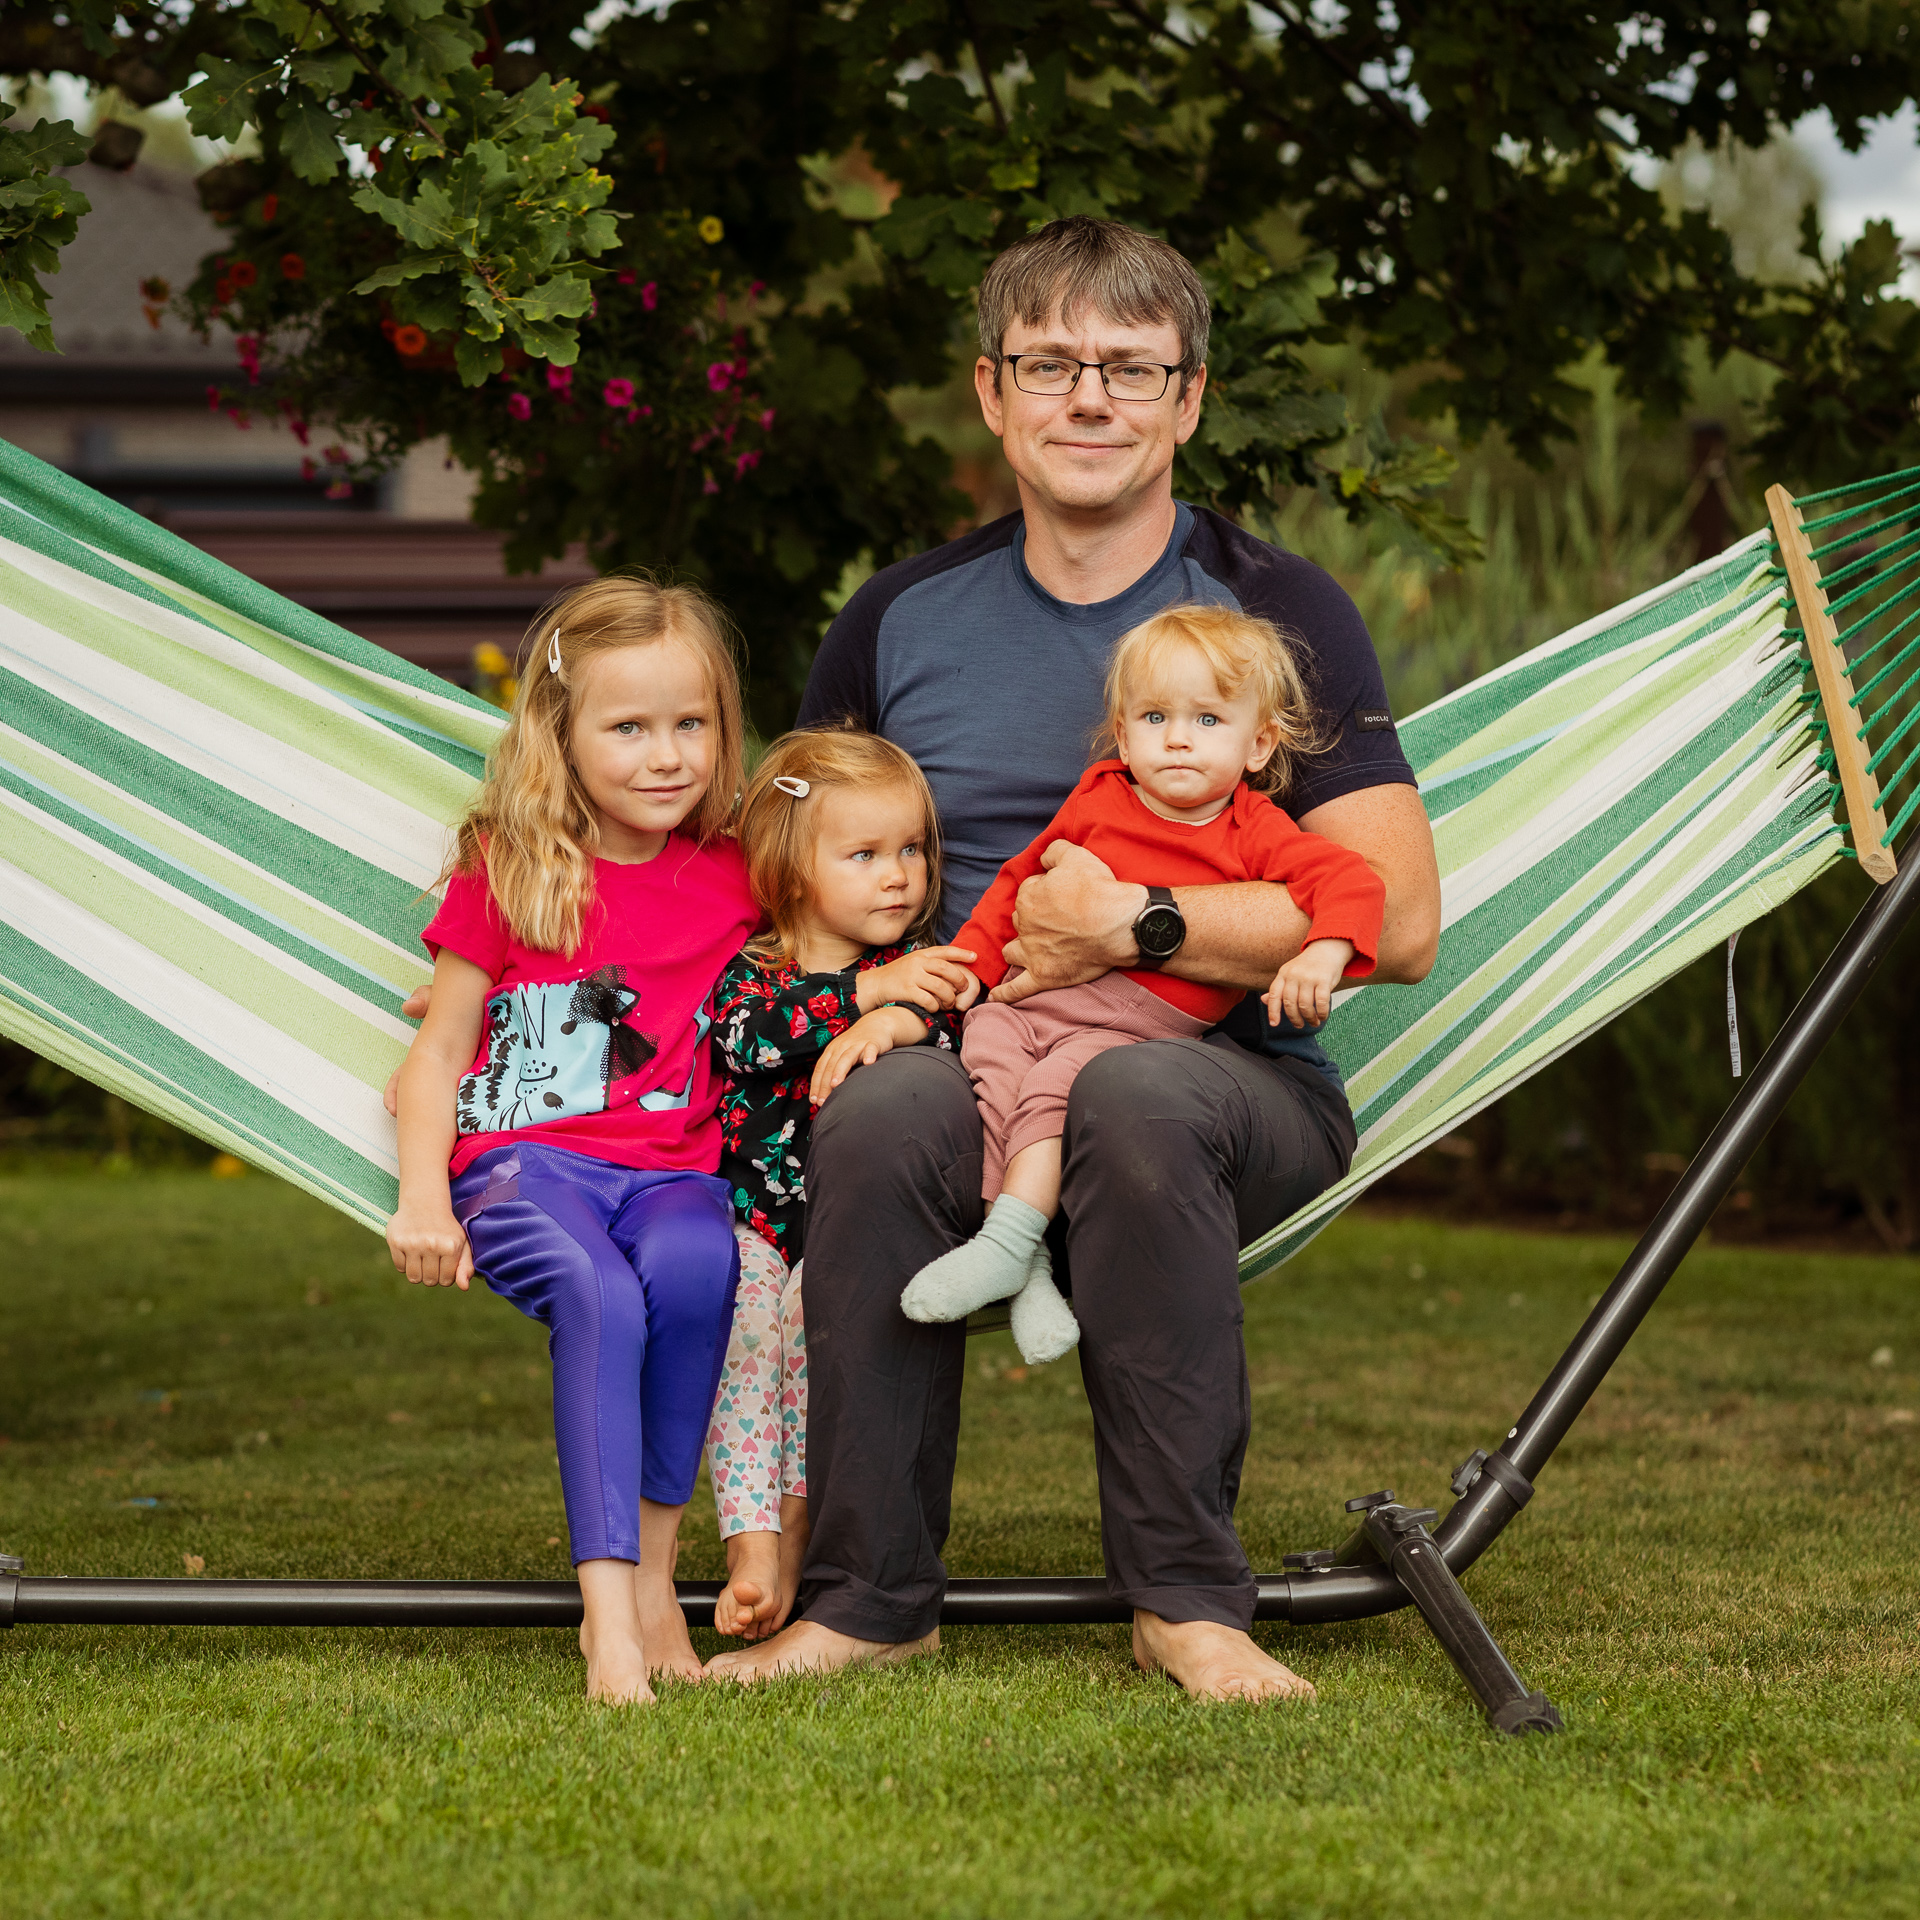 Tėtis sėdi ant hamako sode su trimis dukrelėmis. Mažiausioji ant rankų. 